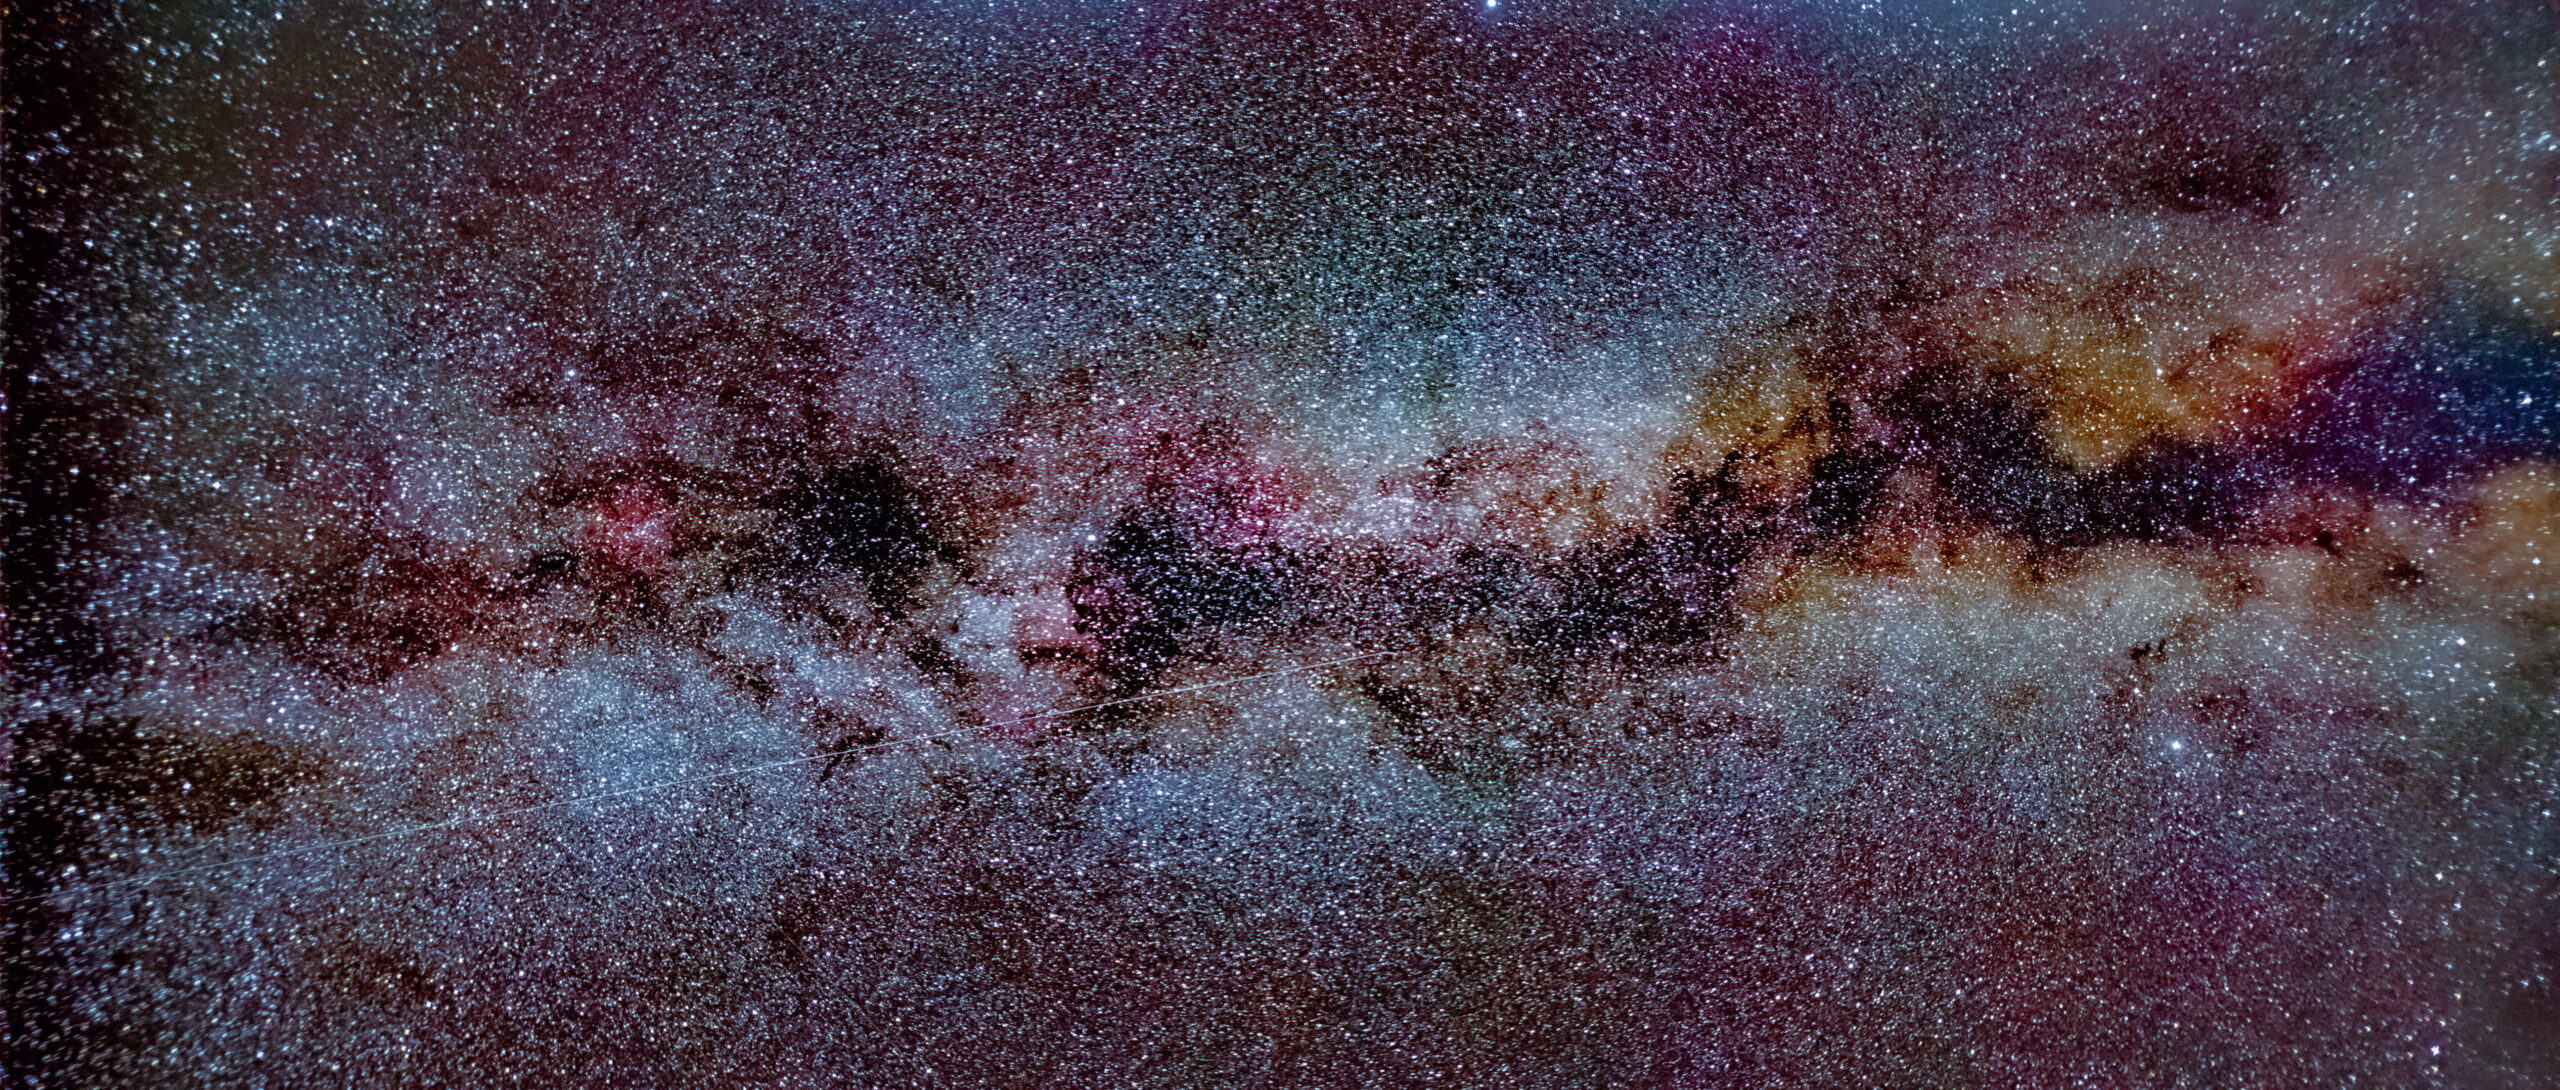 Milchstraße fotografieren: Anleitung & Einstellungen - Tutorial Sternenhimmel und Sterne fotografieren 5